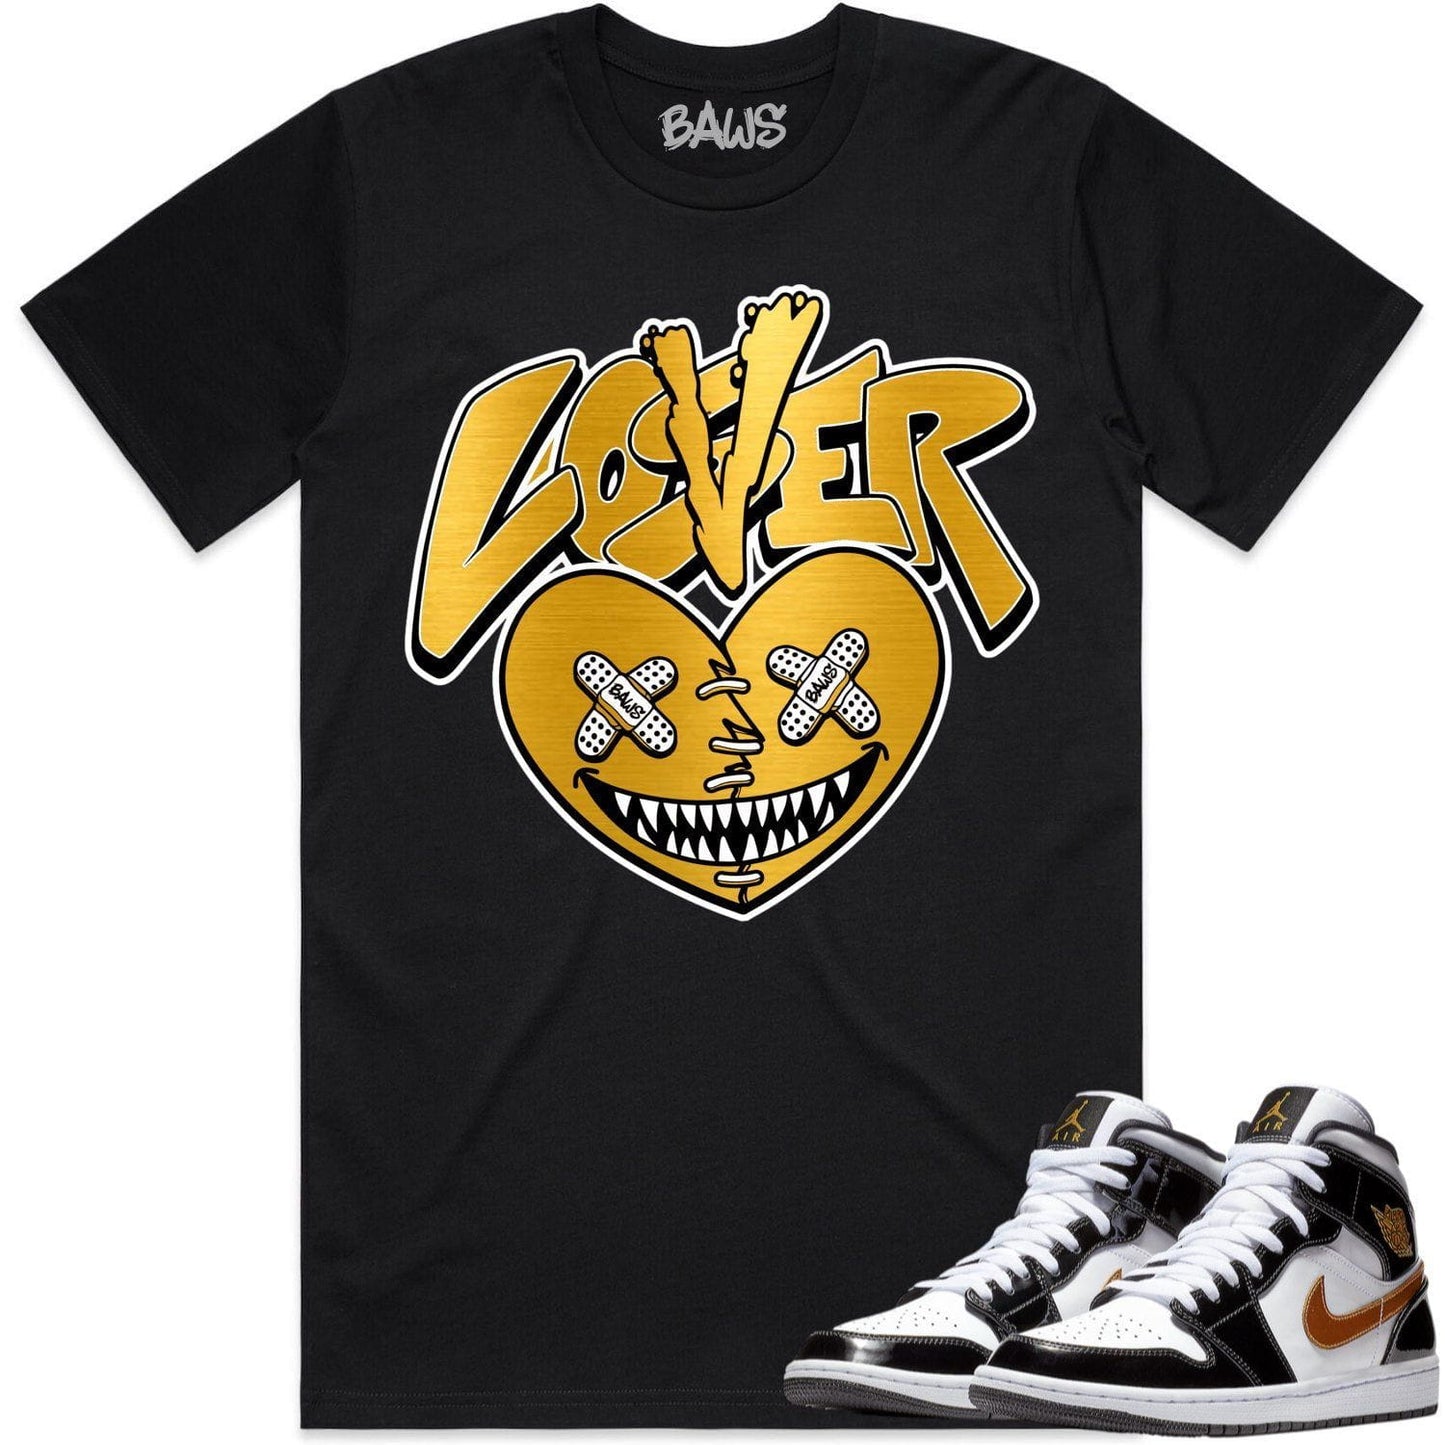 Jordan 1 Mid Patent Black Metallic Gold Shirts - Lover Loser Baws